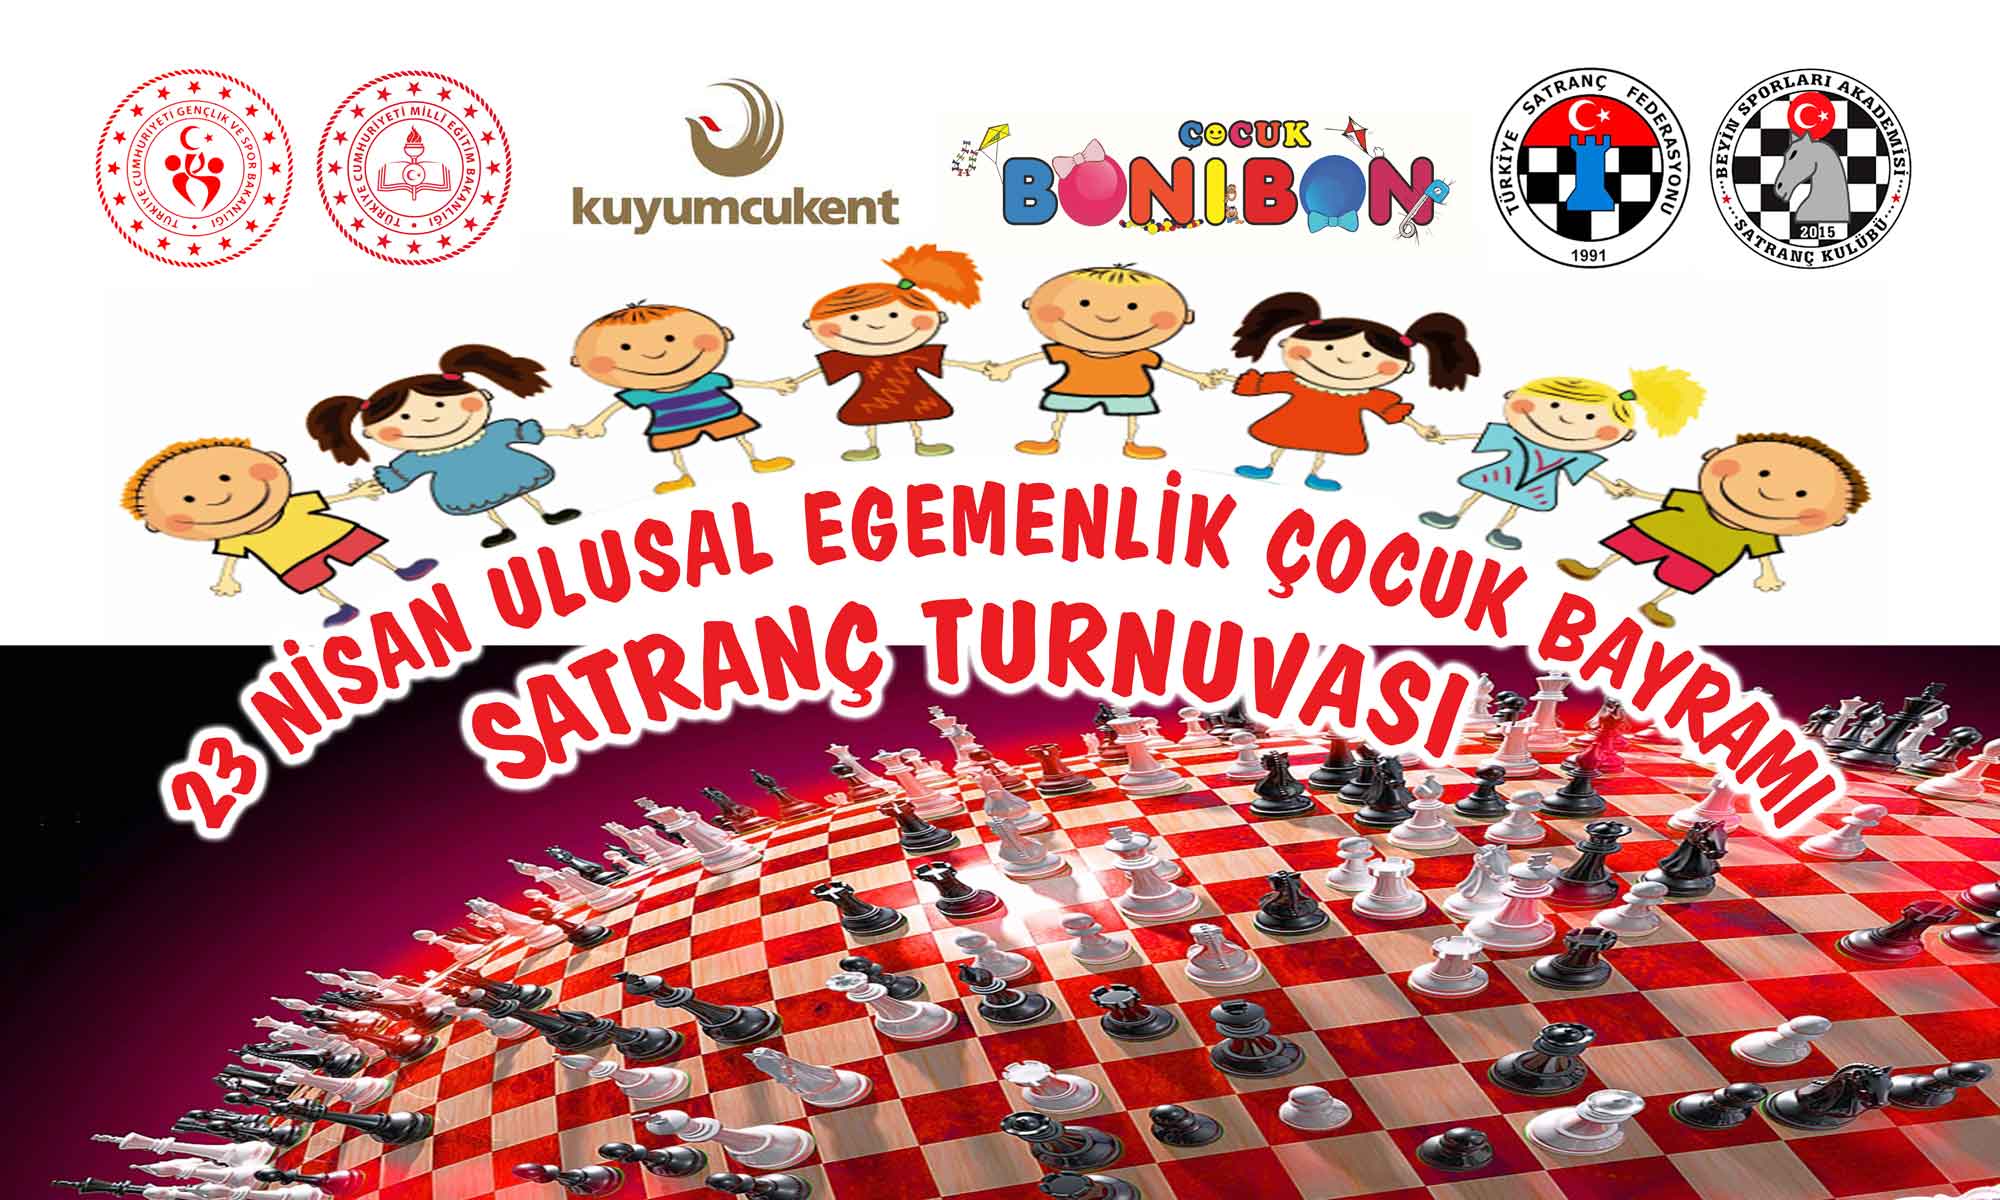 23 Nisan Ulusal Egemenlik Çocuk Bayramı Satranç Turnuvası Etkinliği